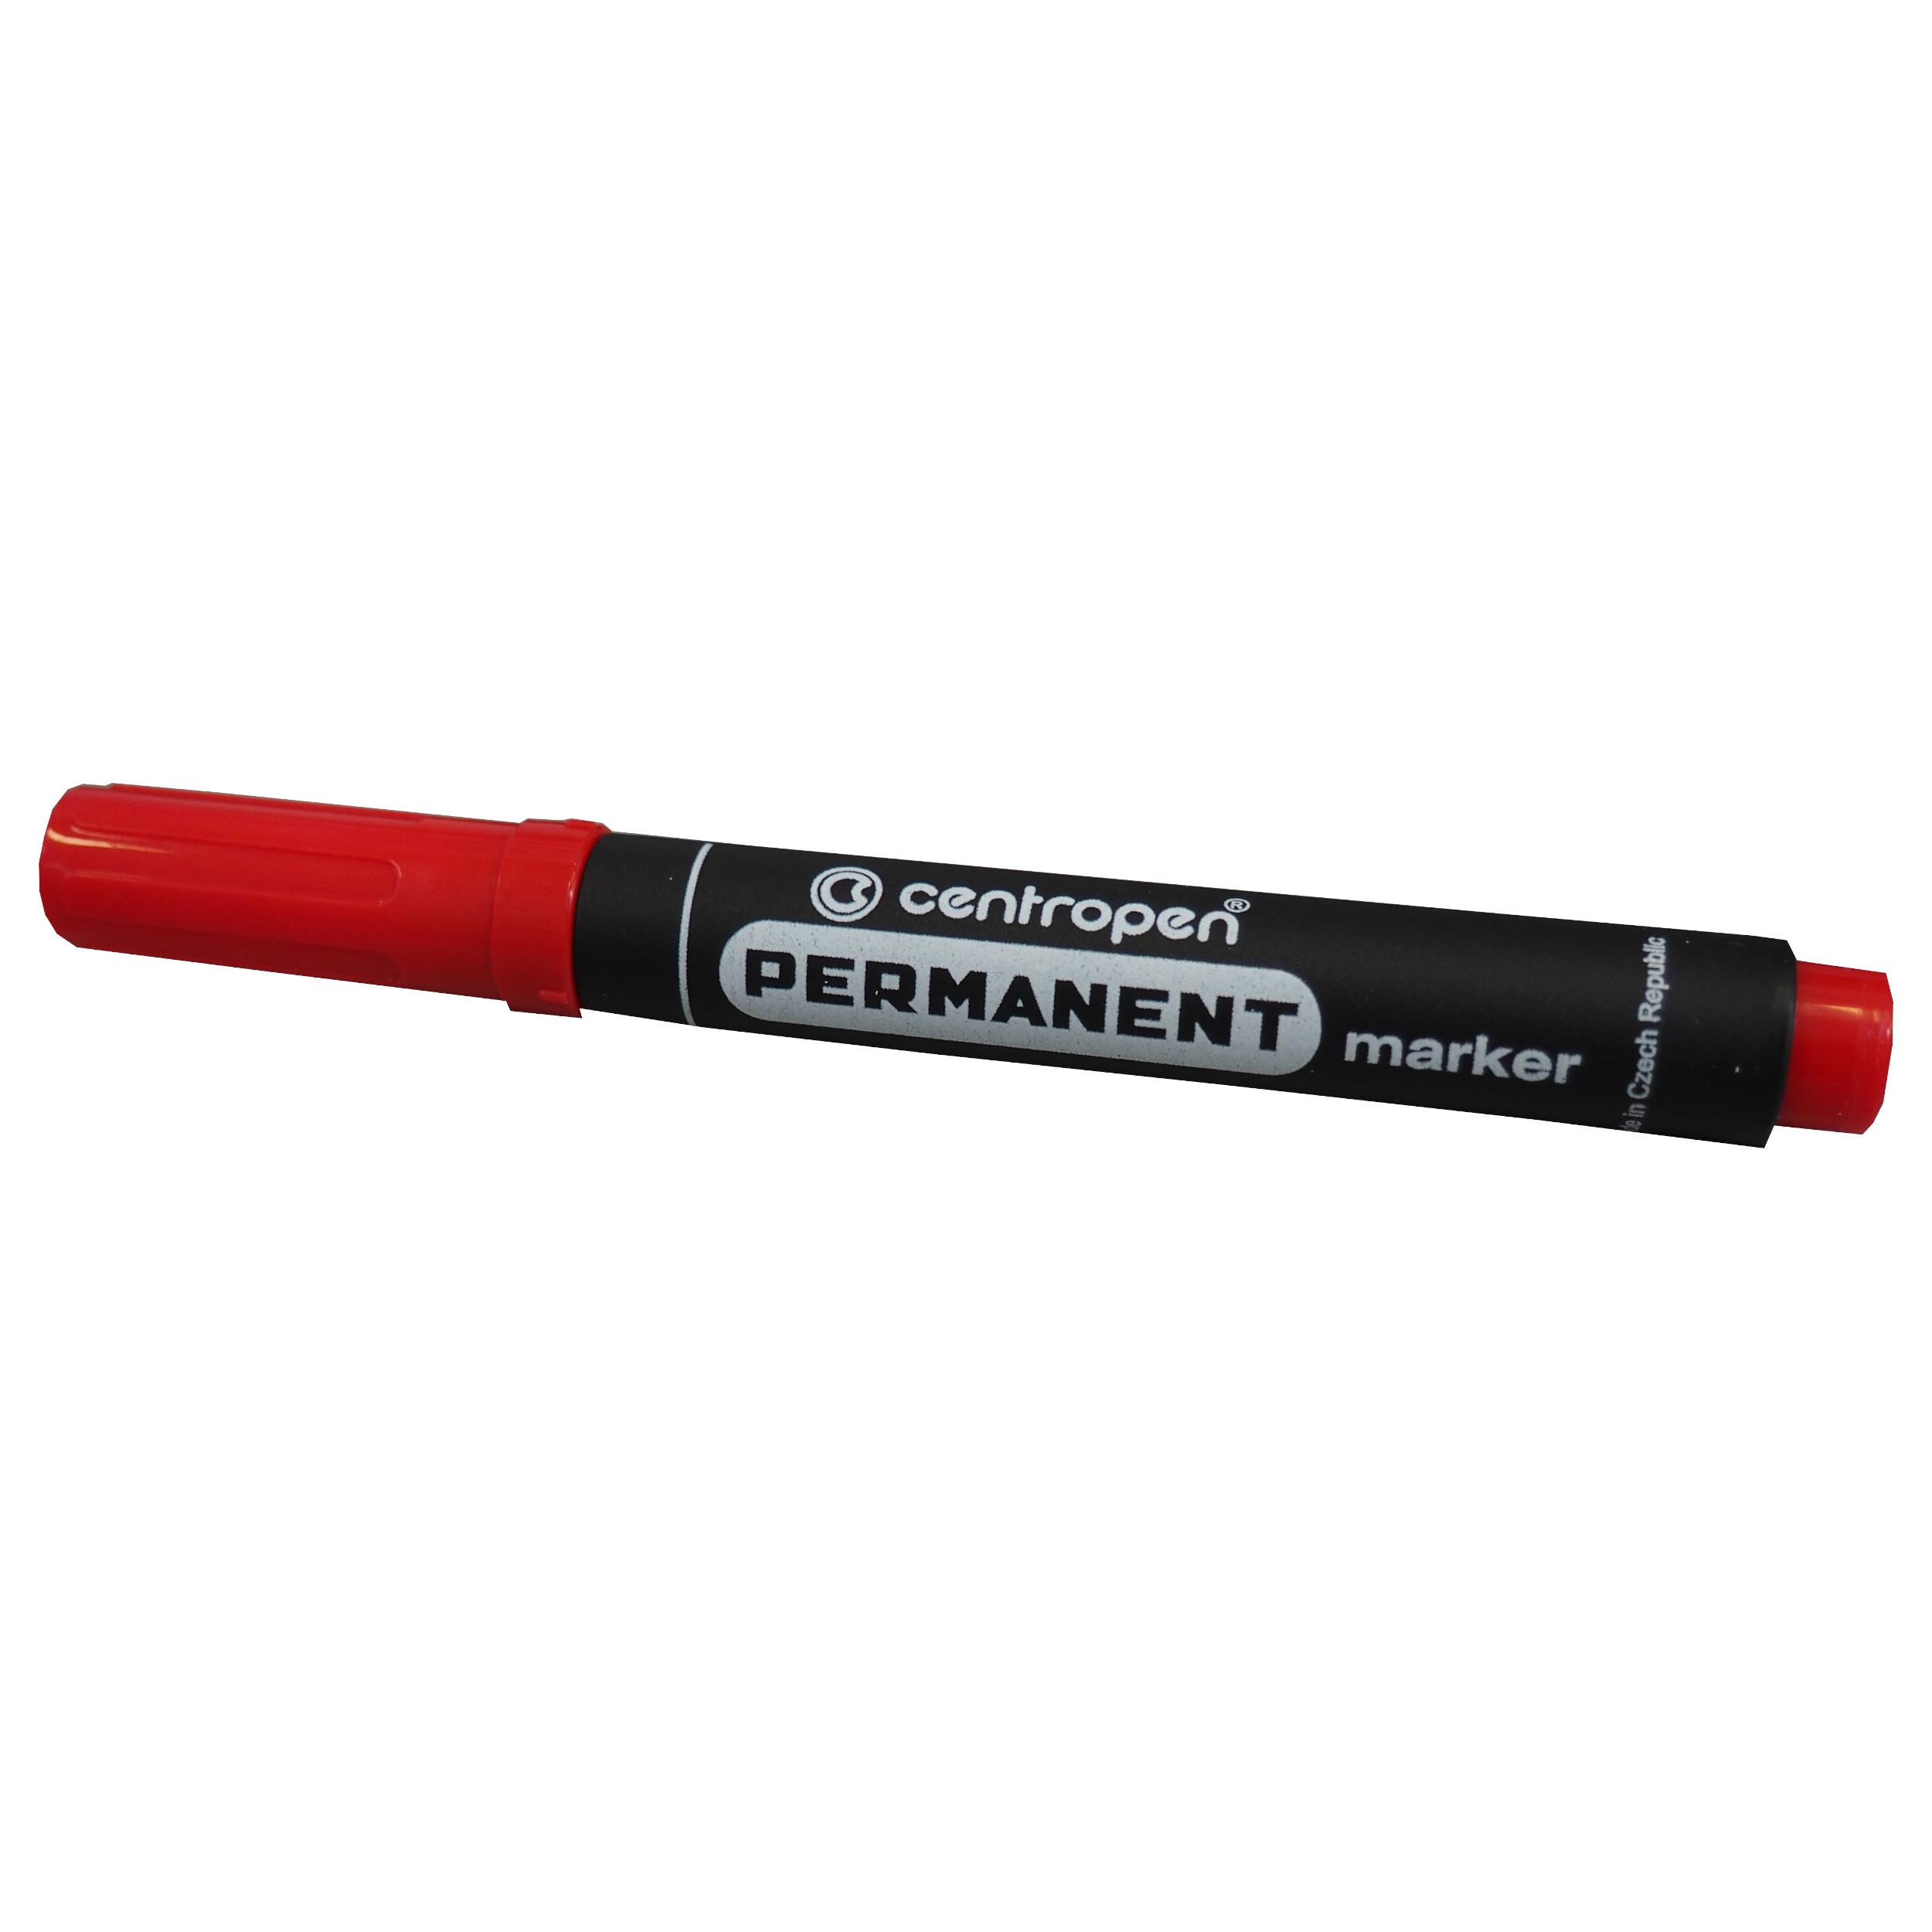 CENTROPEN značkovač permanentní, 8566/1, červený, stopa 2,5mm, sada 10 ks 0.17 Kg TOP Sklad4 800710 45